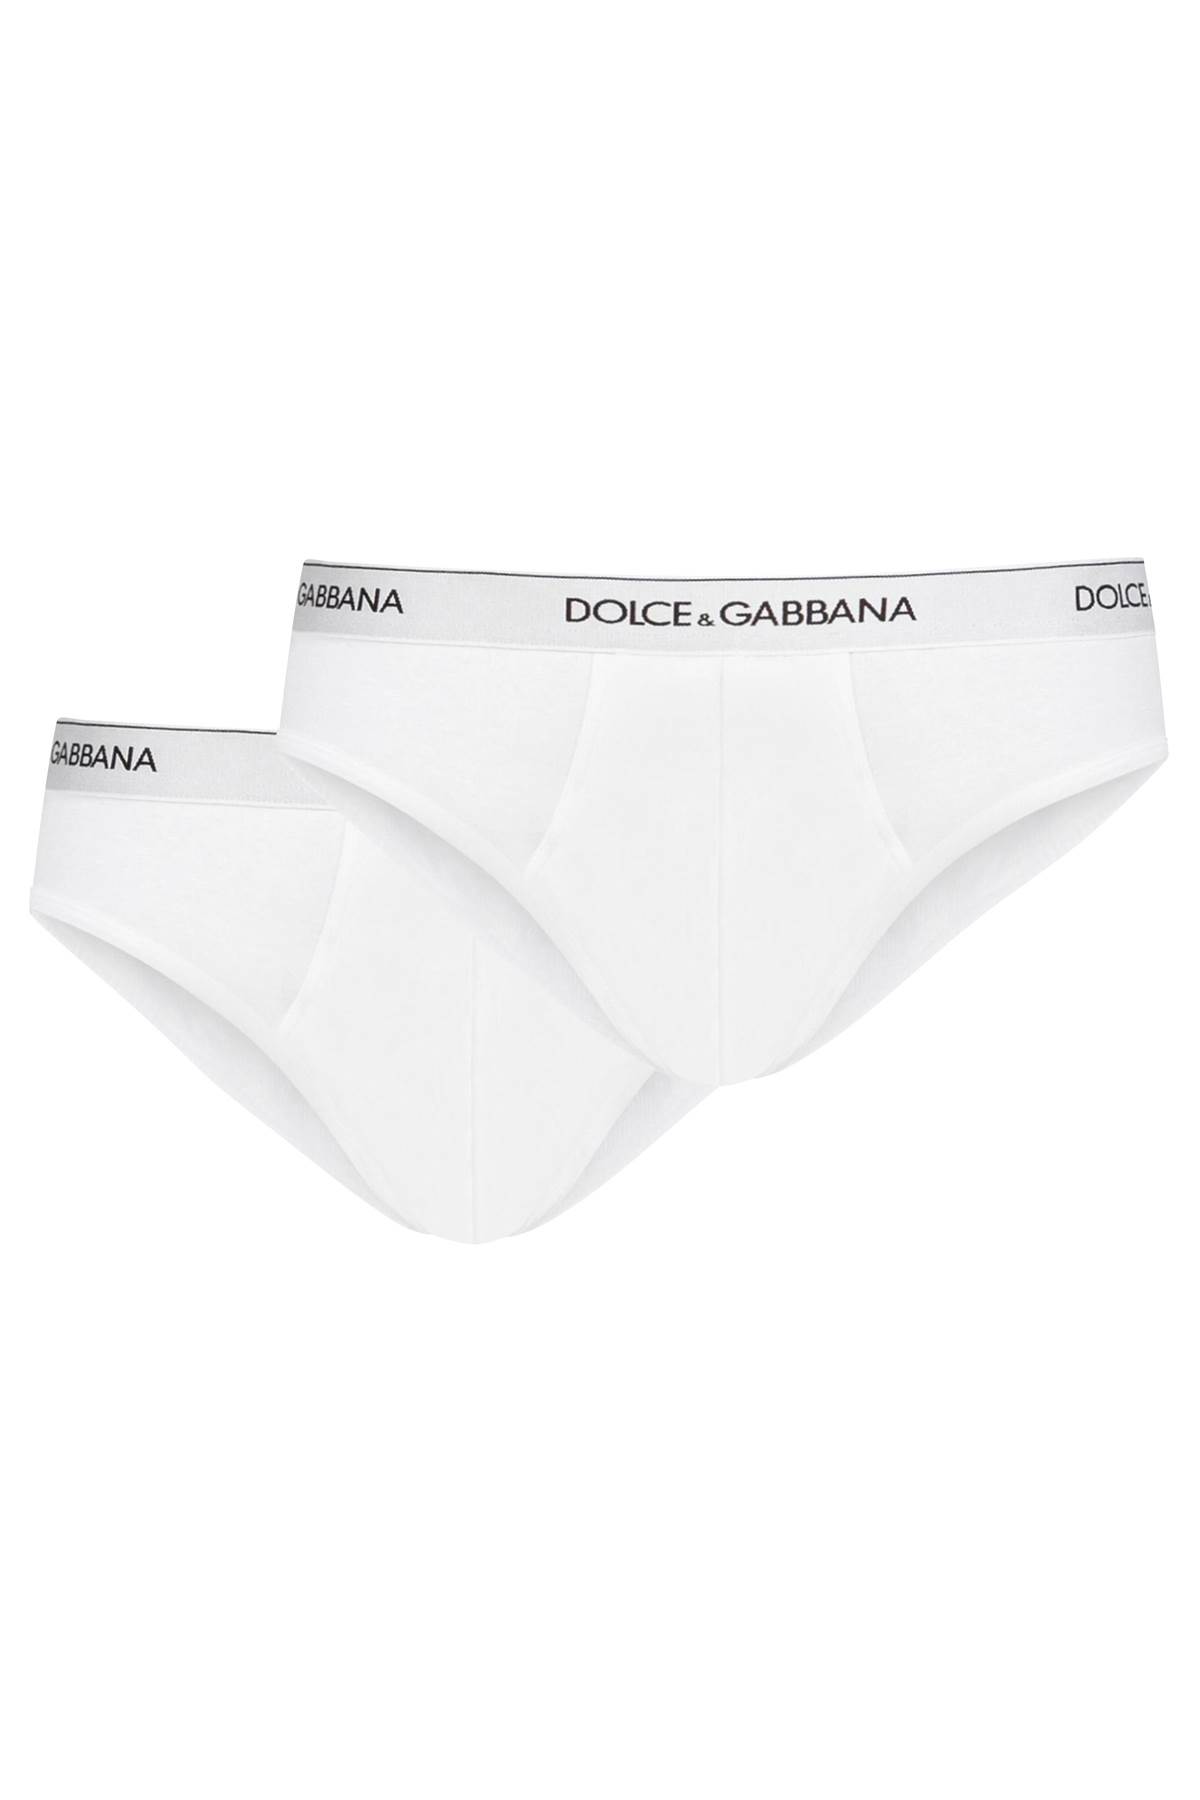 Dolce & Gabbana Underwear Briefs Bi-pack